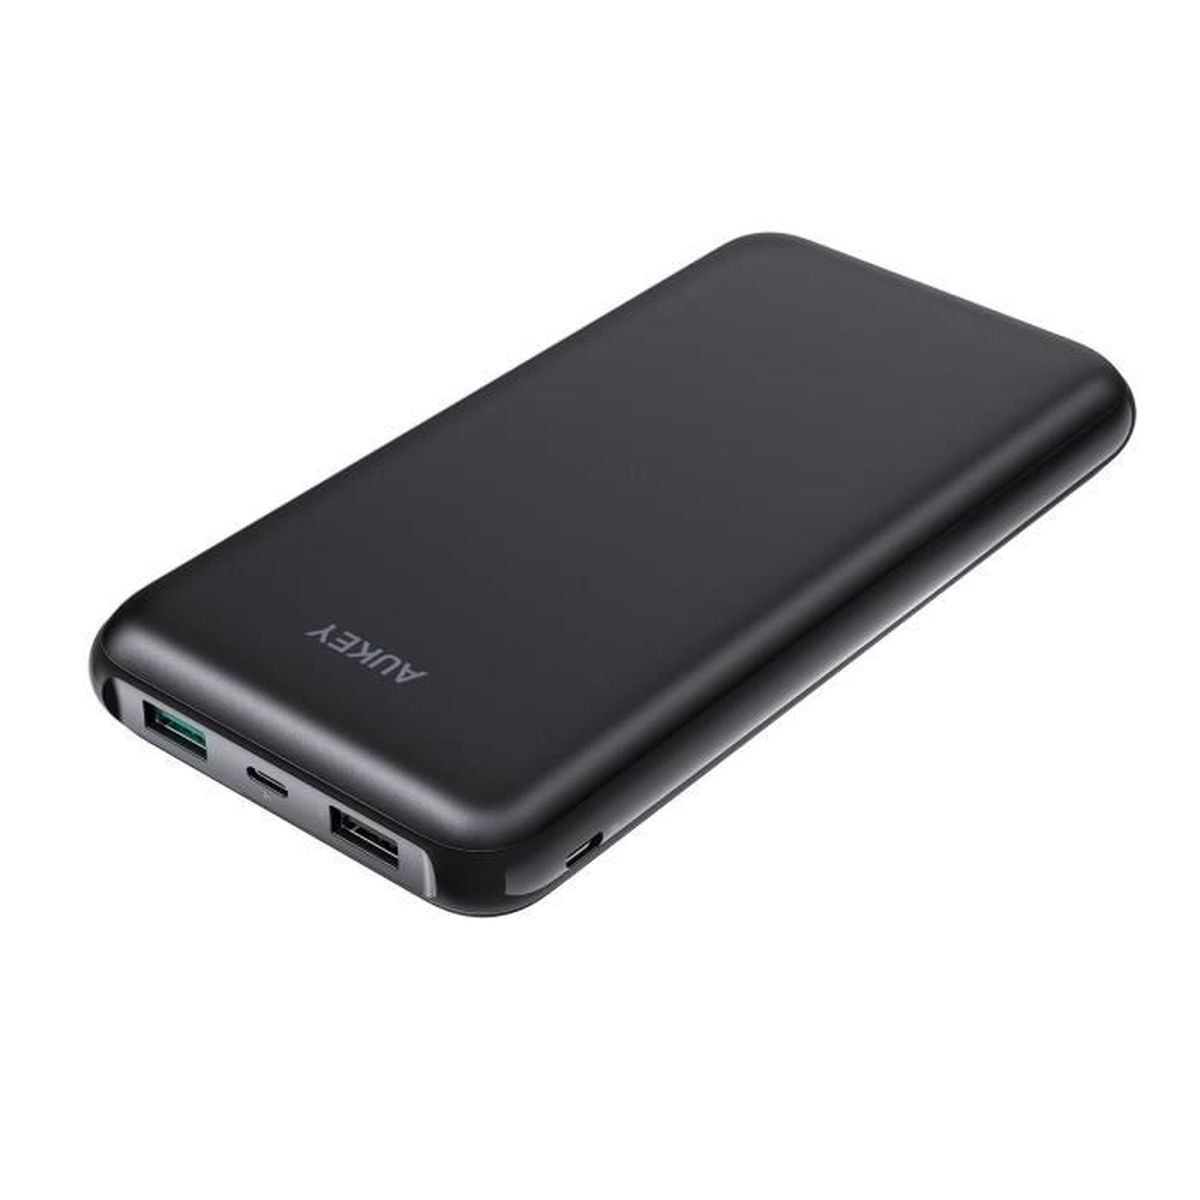 Power Bank 2 Ports Entrée pour iPhone X/ 8/ Plus/ 7/ 6s, Samsung S8+/ S8, iPad Tablette etc. AUKEY Batterie Externe 20000mAh 